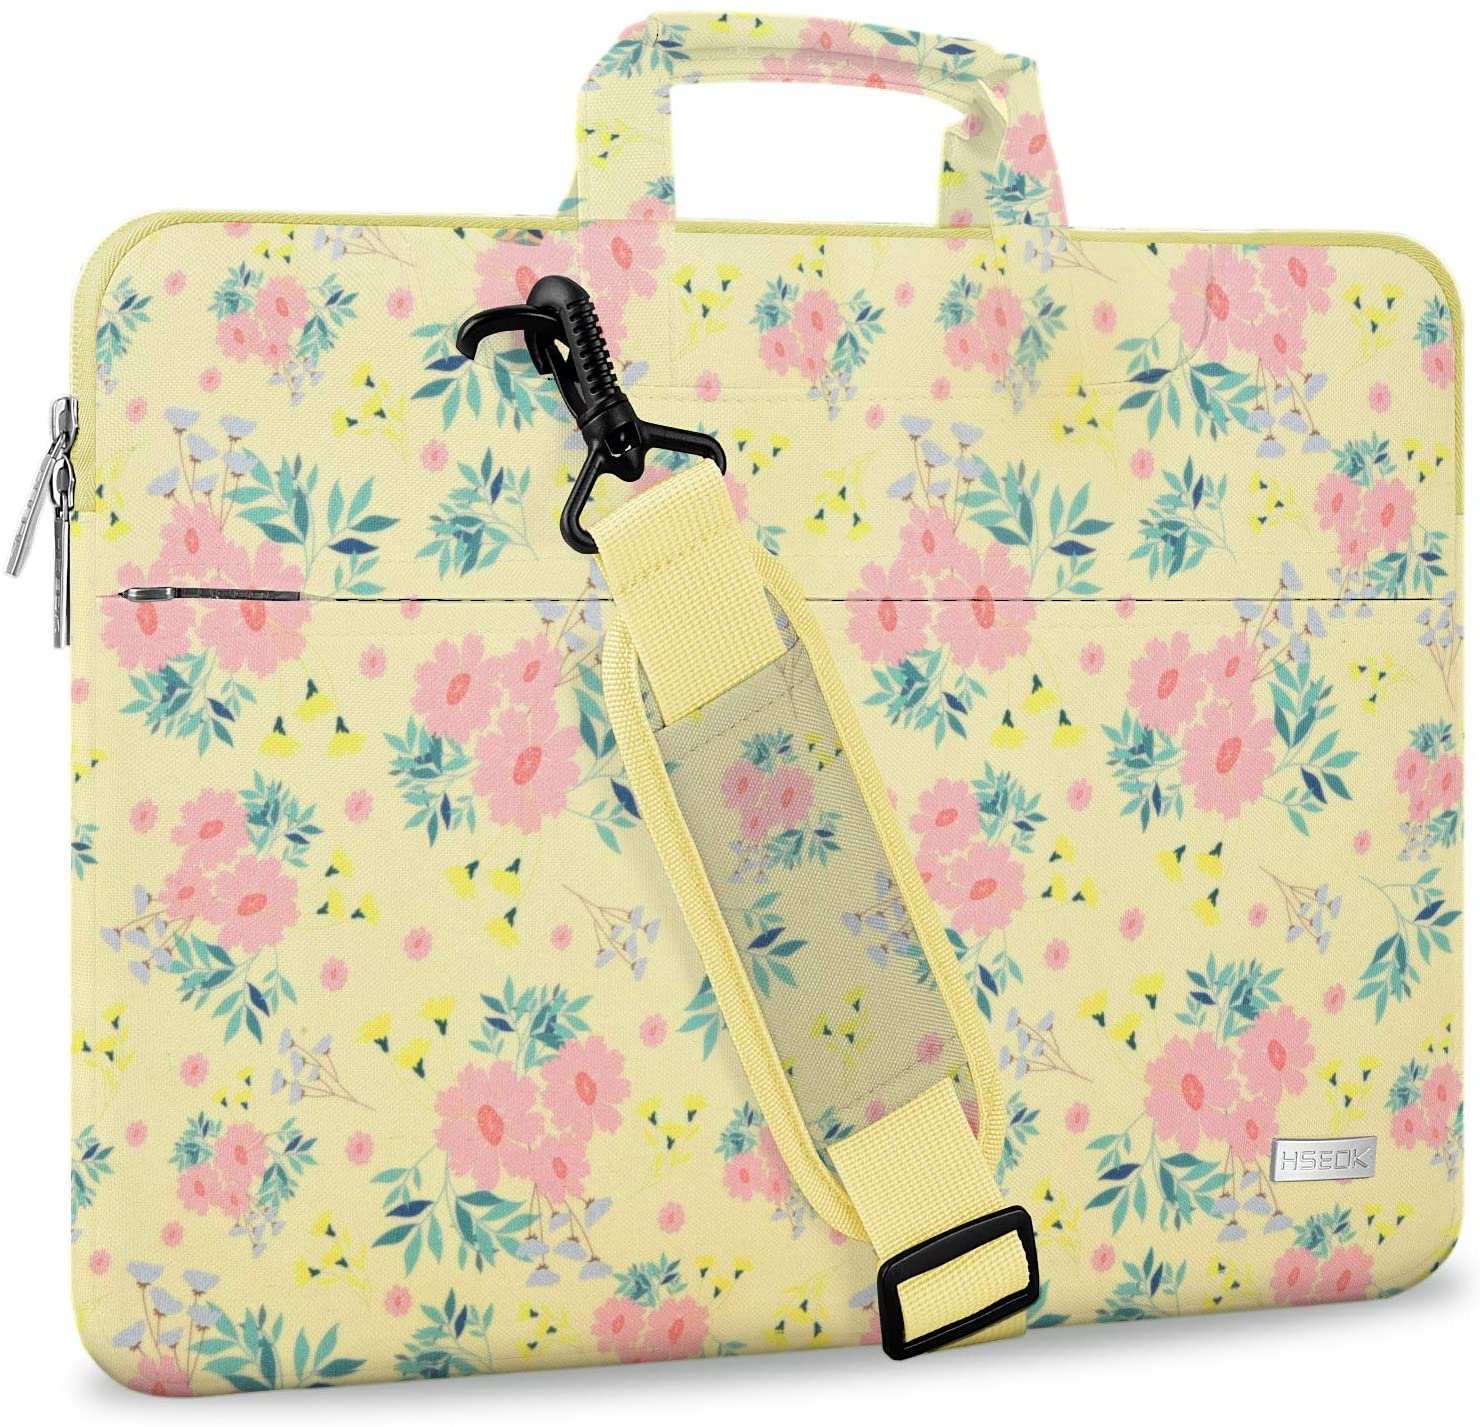 Laptop Shoulder Bag for MacBook Air/Pro, XPS 13, Surface Book 13.5" Spill-Resistant Handbag with Shoulder Strap